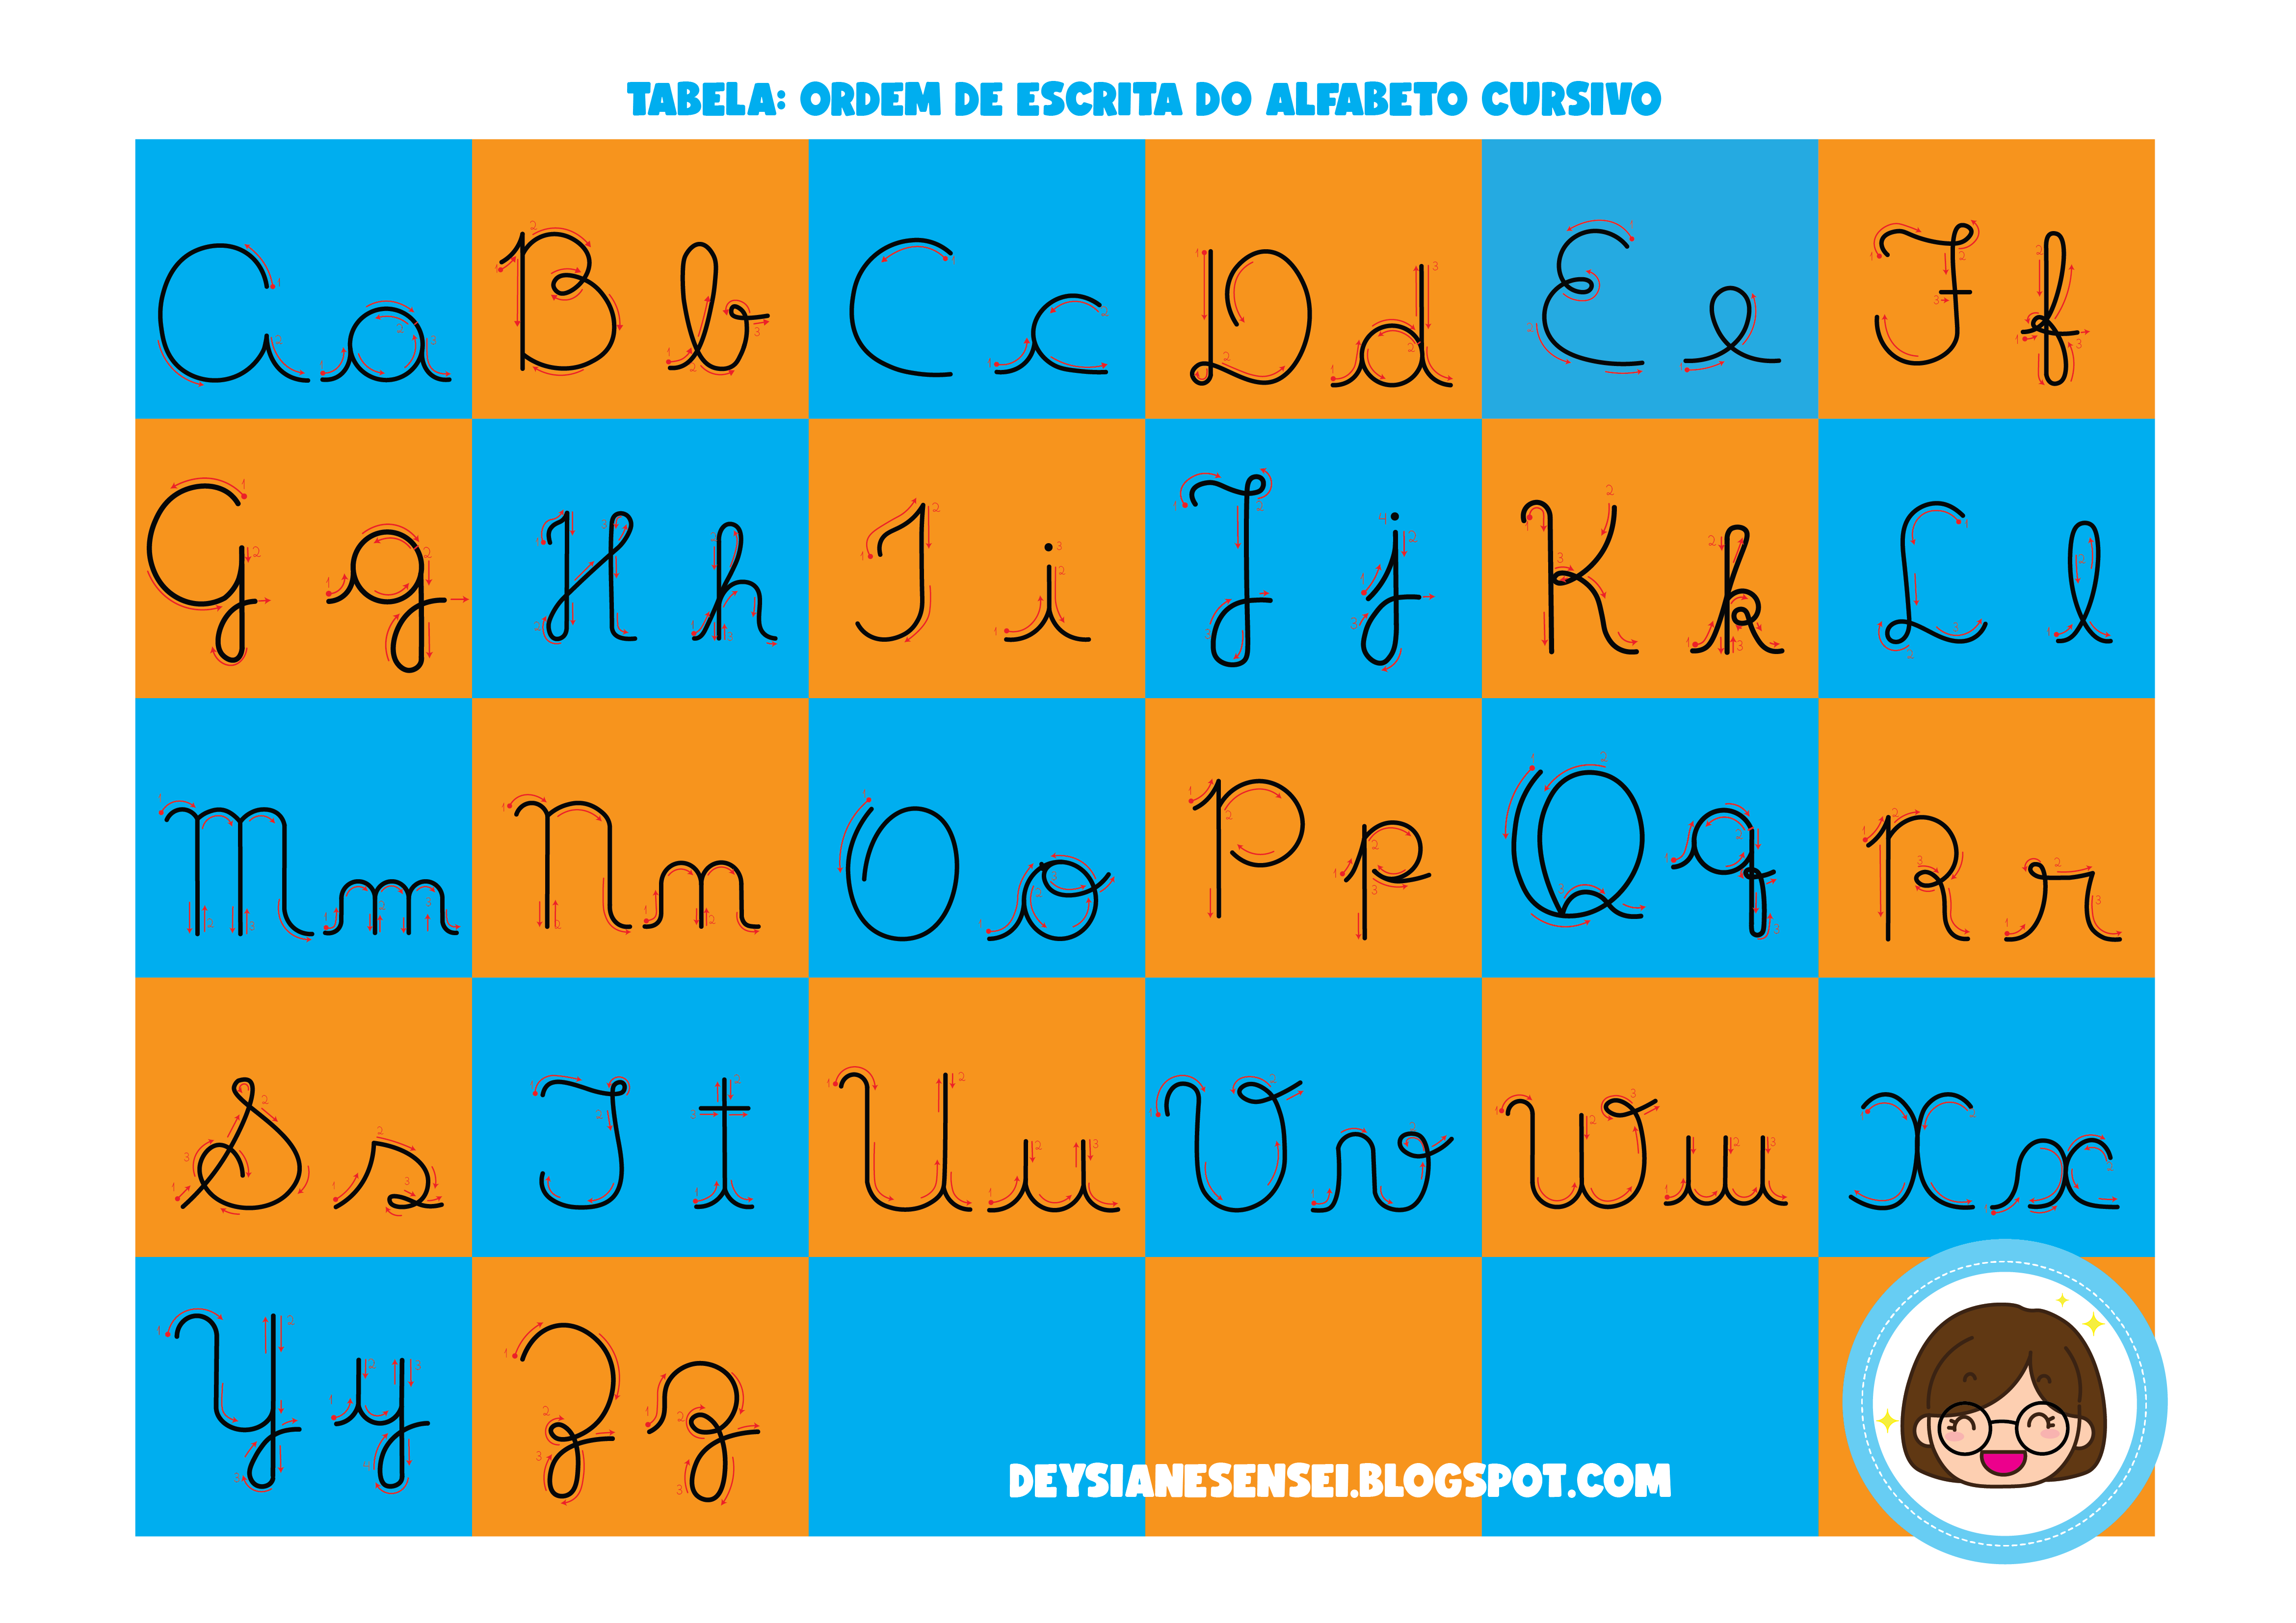 DeysianeSensei: Atividades para baixar: Linguagem - Alfabeto em letra  cursiva com setas